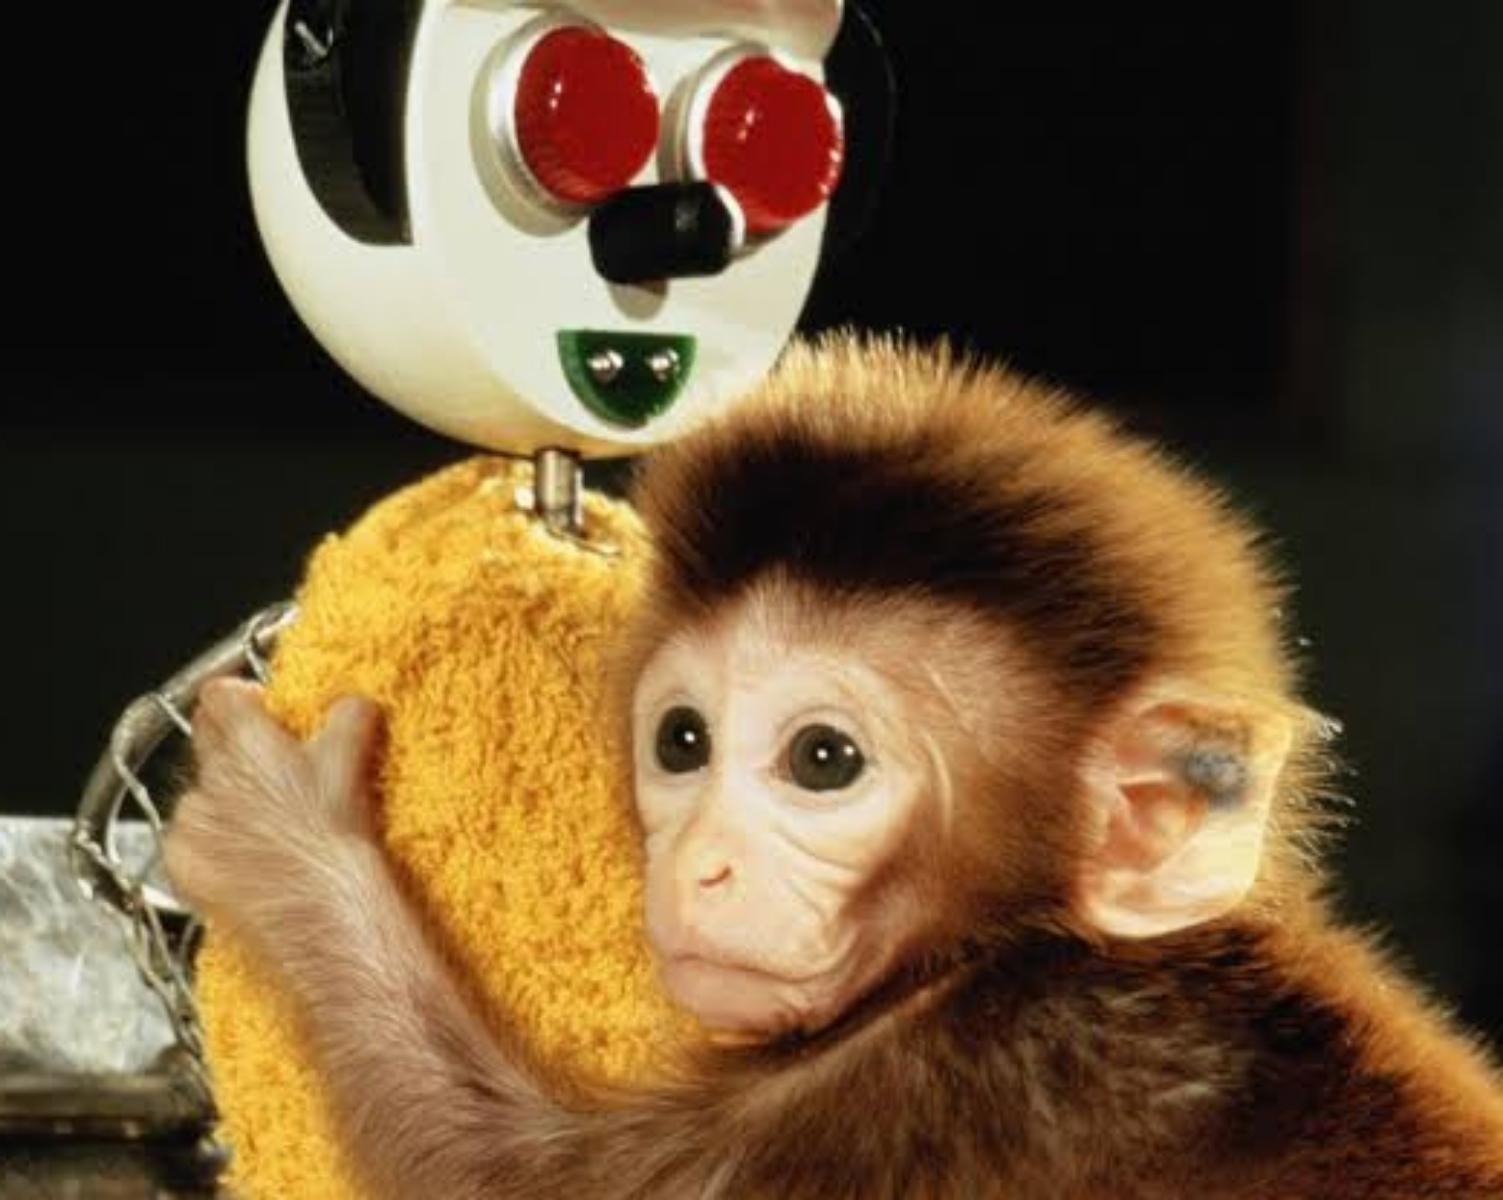 Monkey love experiment